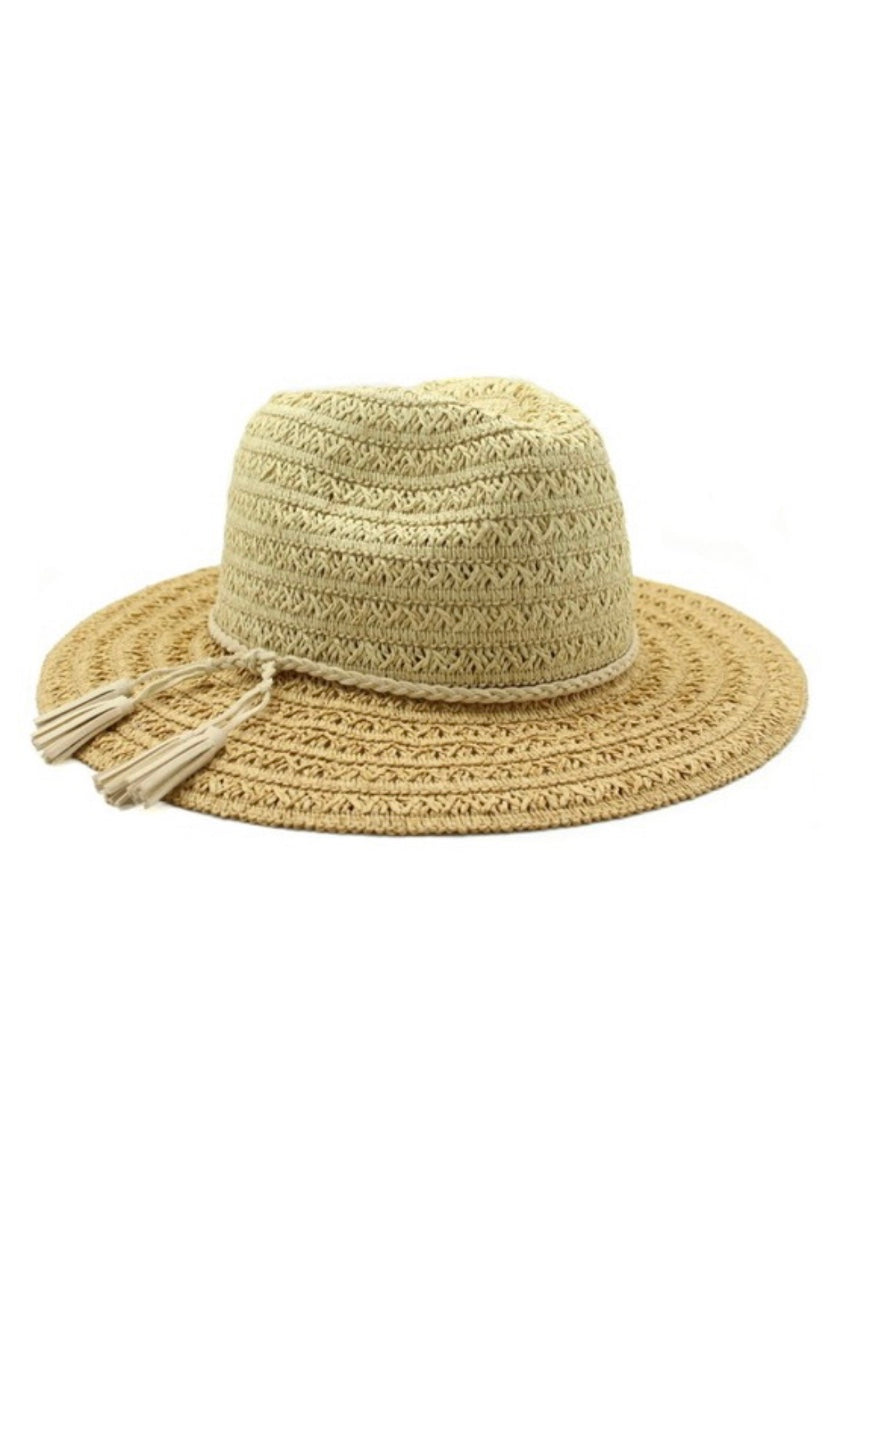 Boho Natural & Tan Brim Panama Sun Hat-